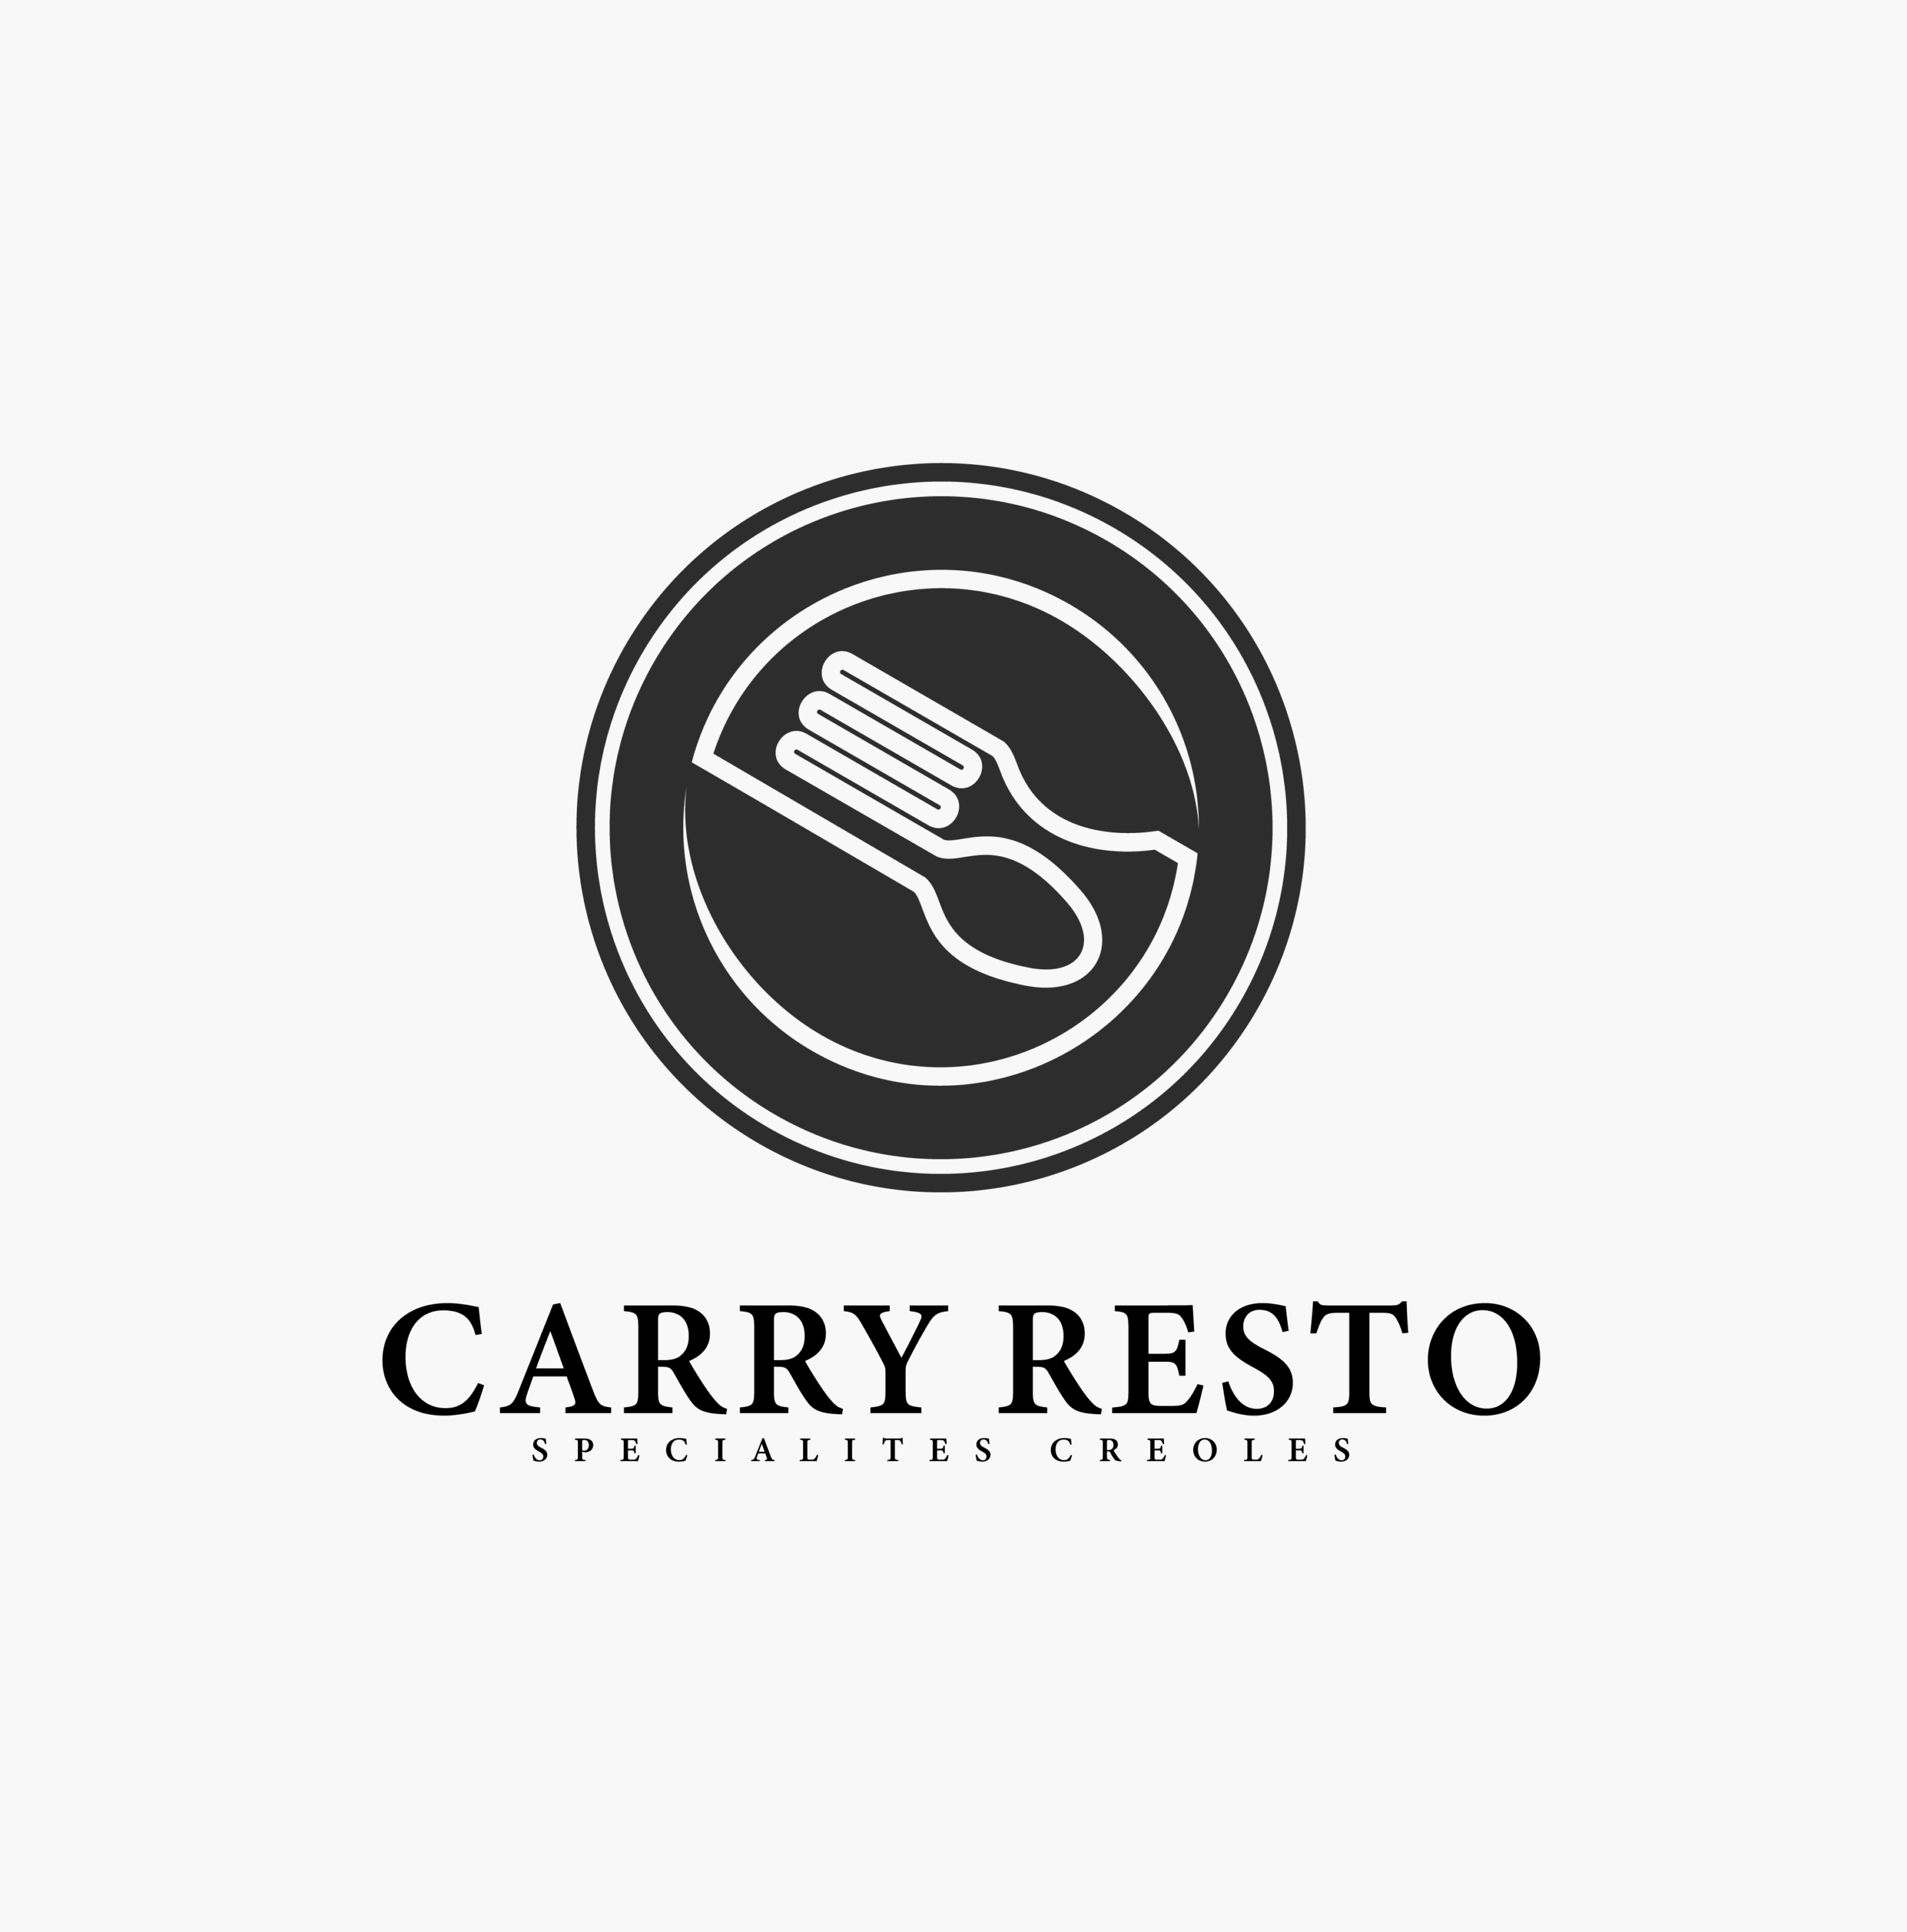 Carry Resto